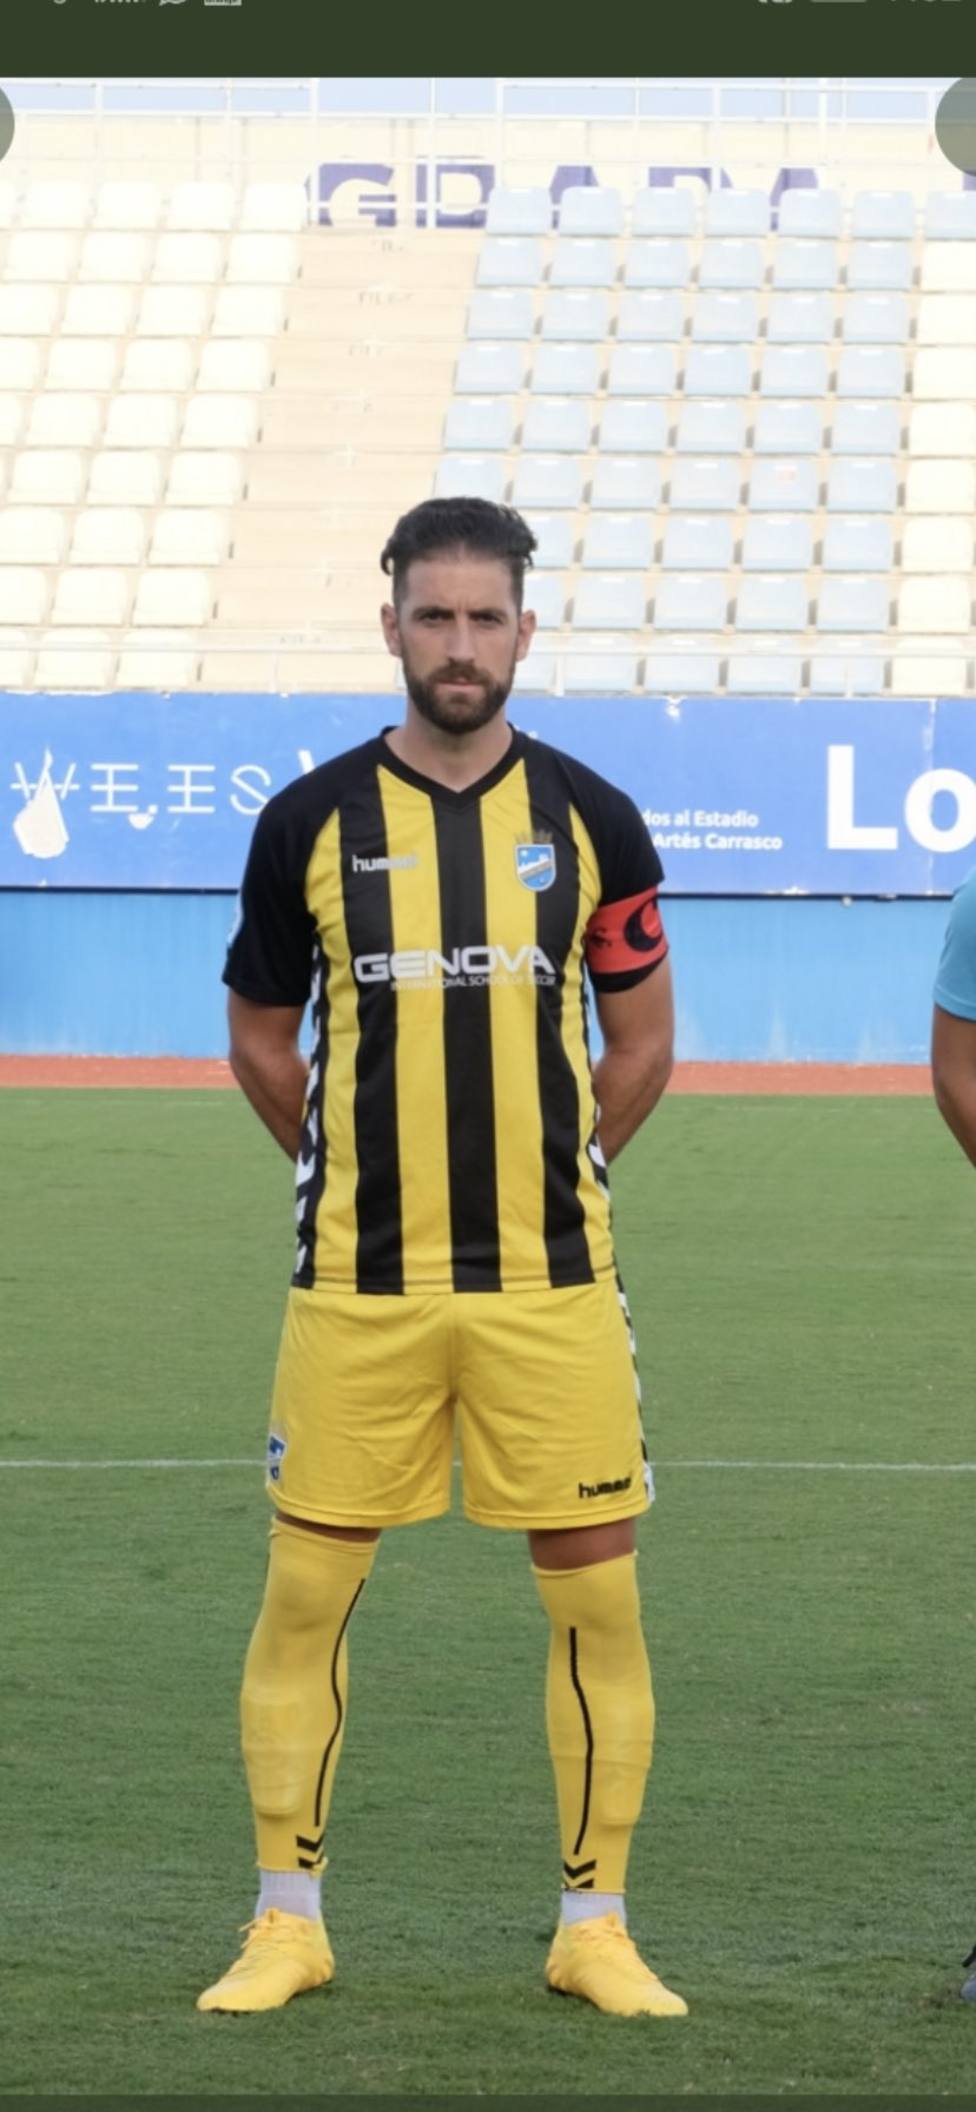 David Valdeolivas, el primer jugador que se marcha del Lorca FC